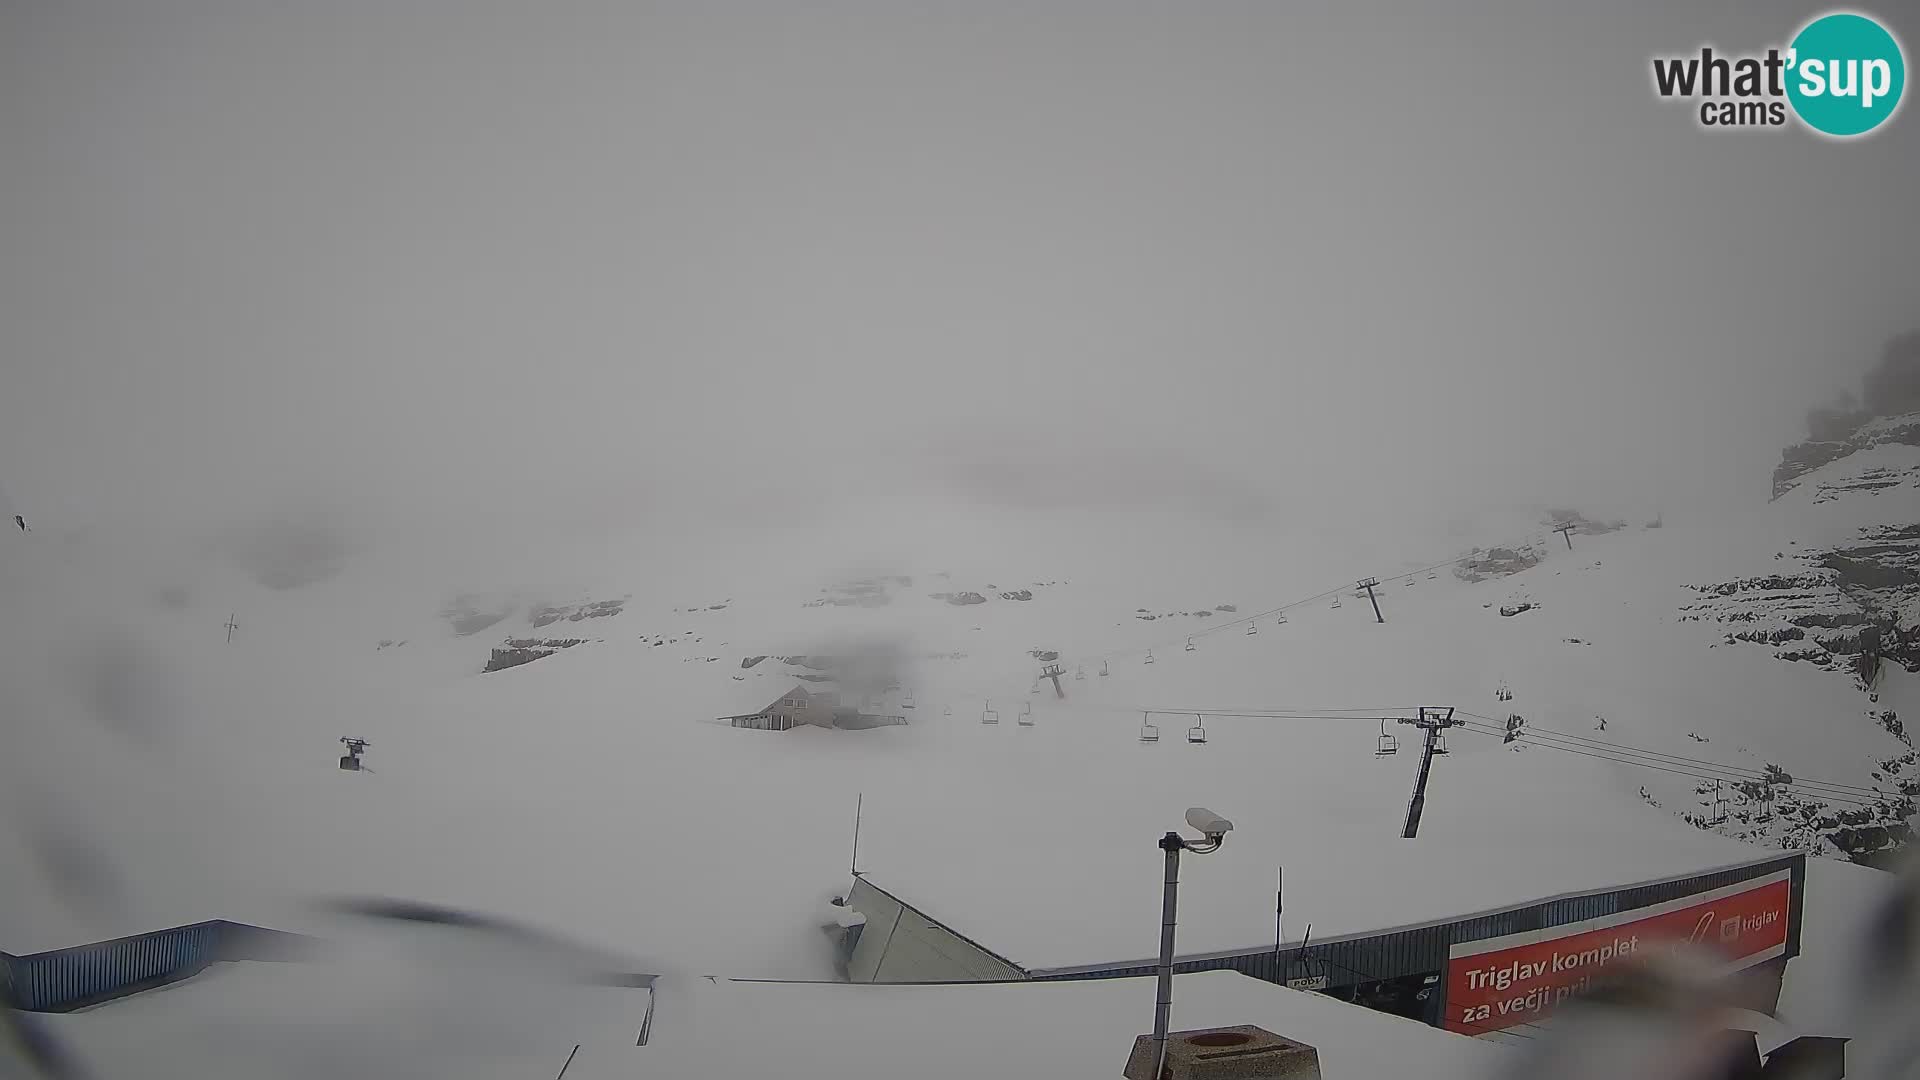 Kanin ski resort – View of Prestreljenik